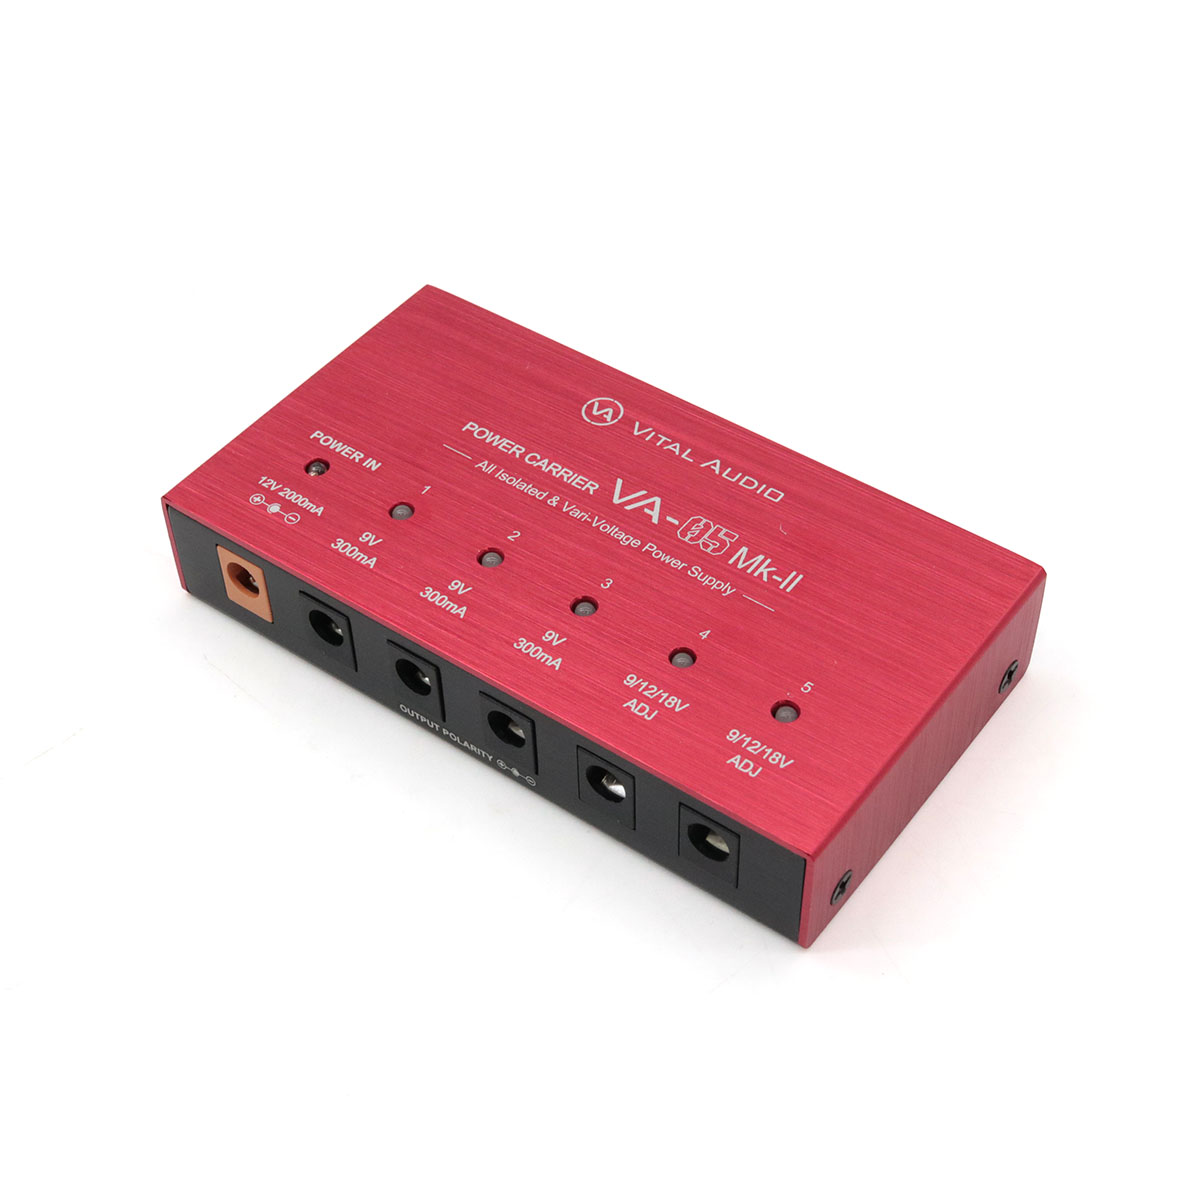 vital audio パワーサプライ 5ポート ケーブル・アダプタ付属 - 器材